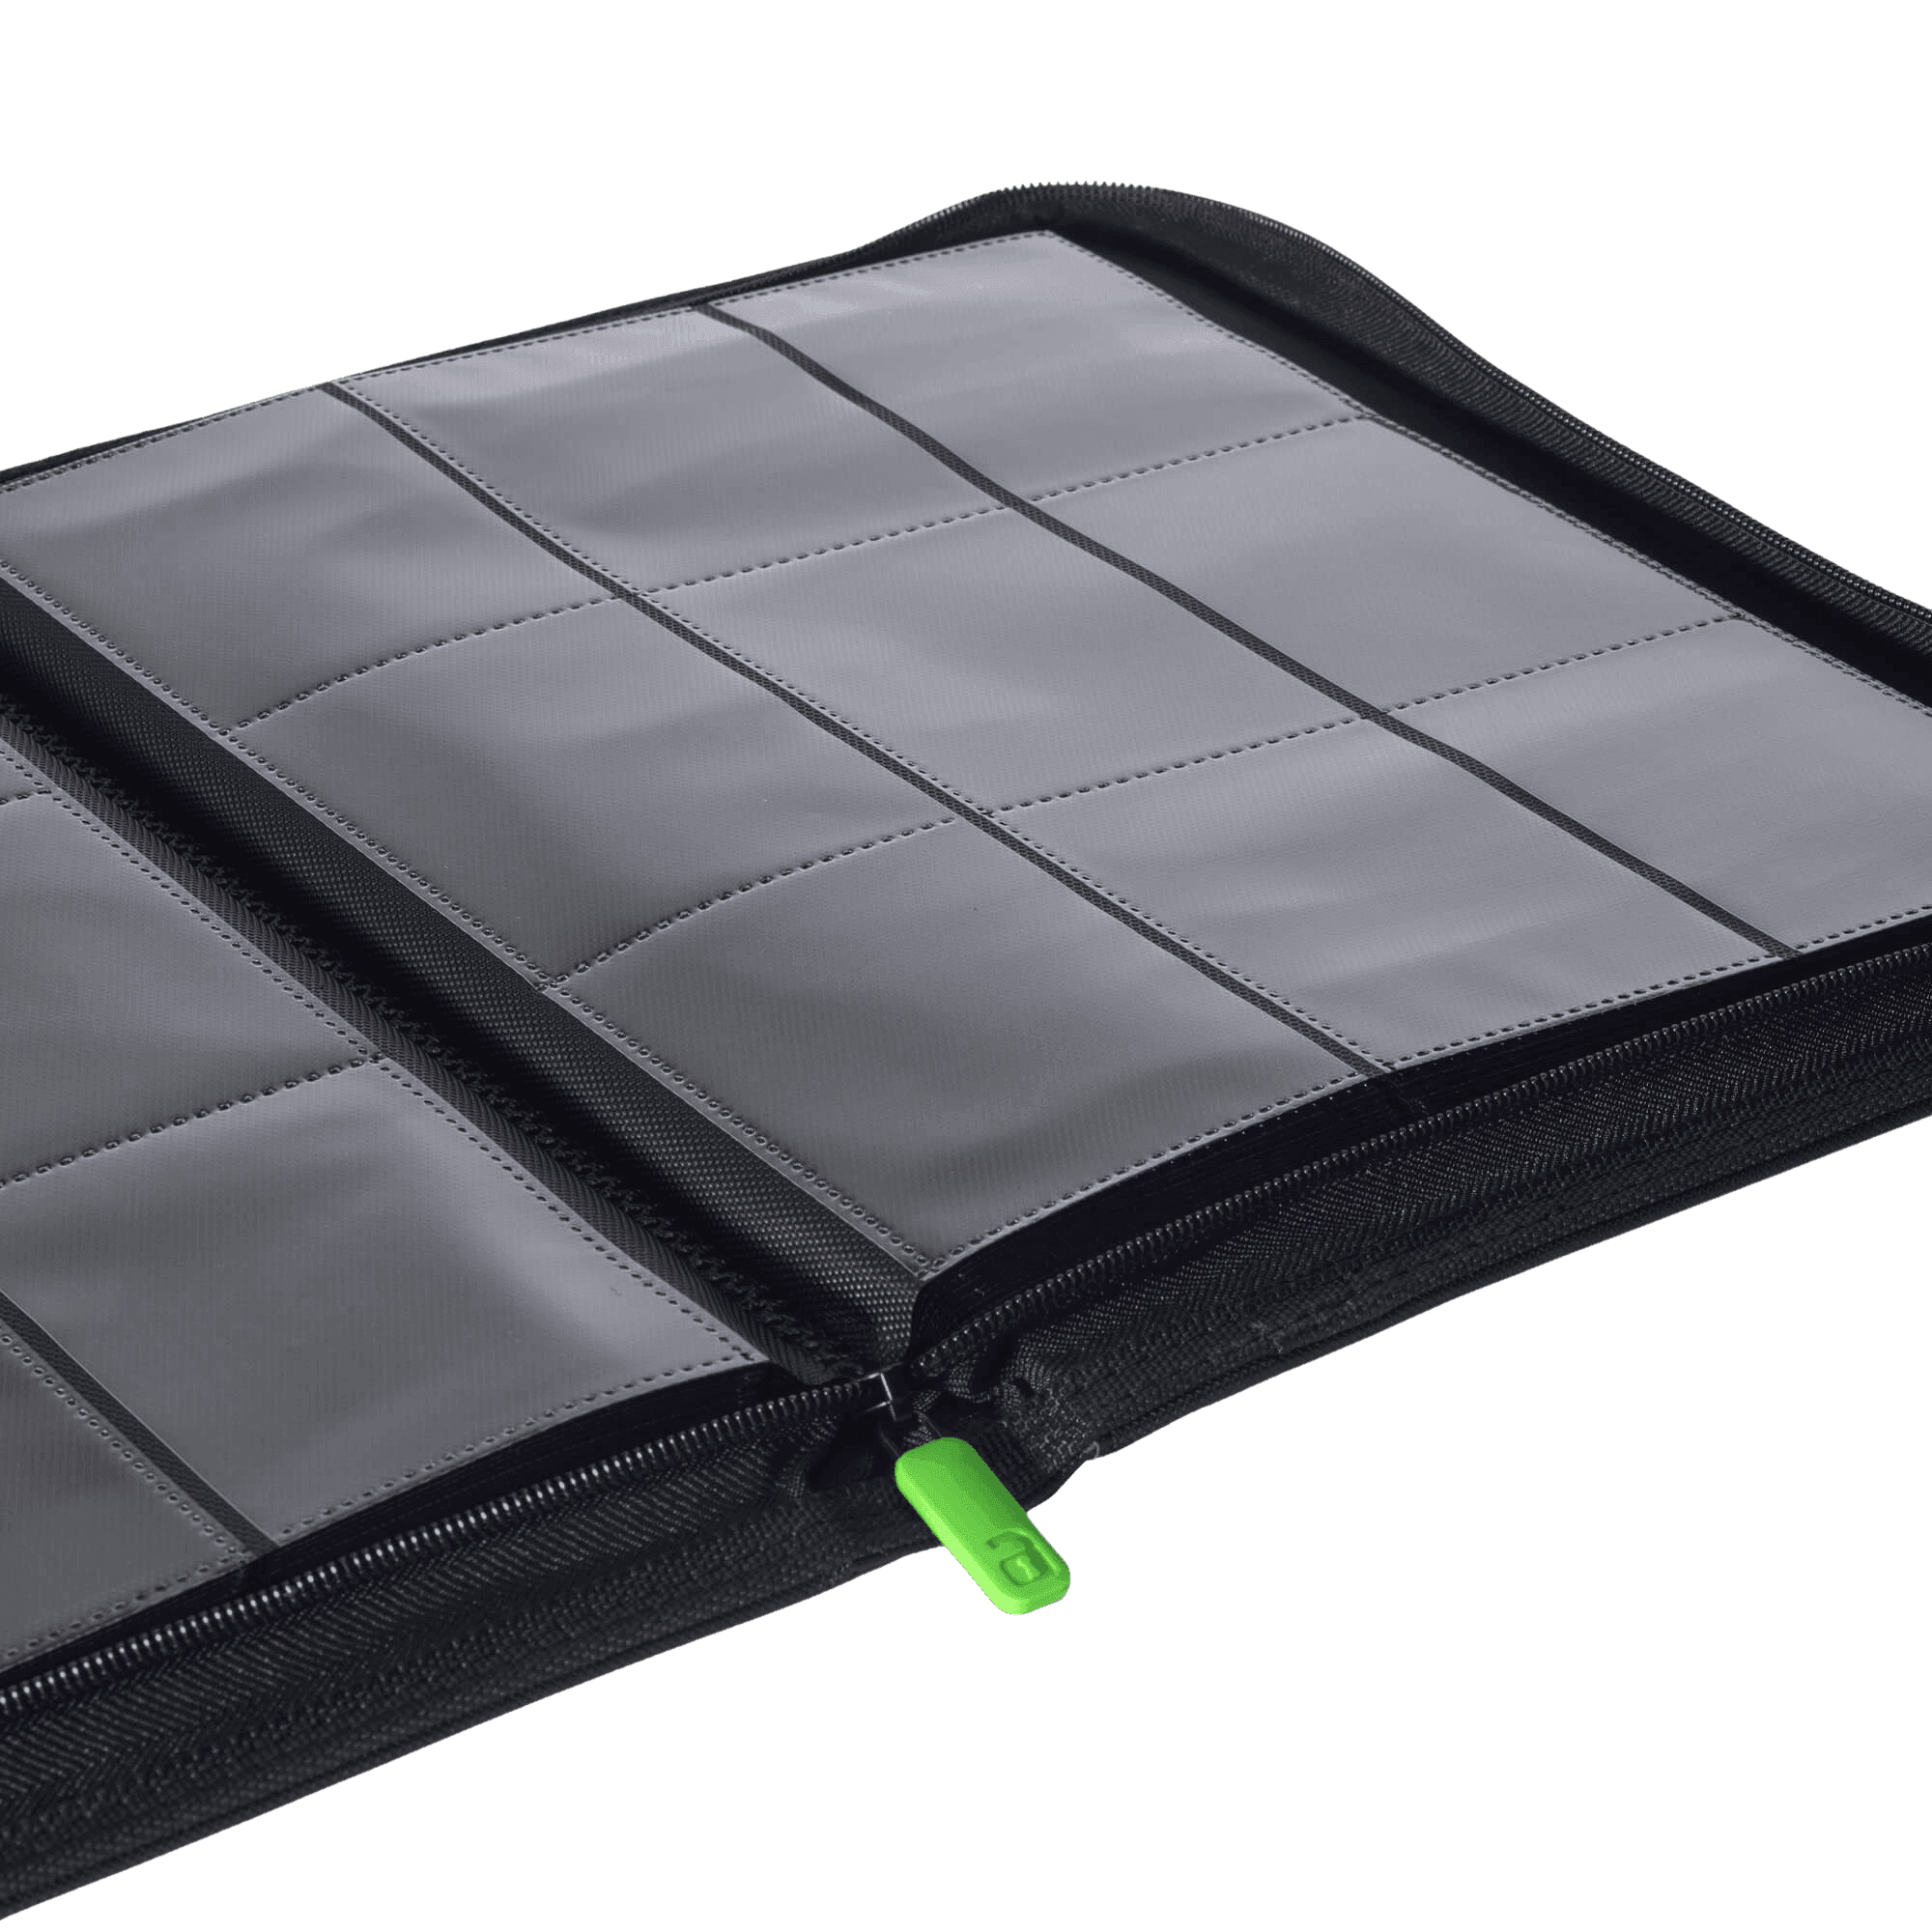 Vault X 9-Pocket Exo-Tec® Zip Binder - Black - The Card Vault